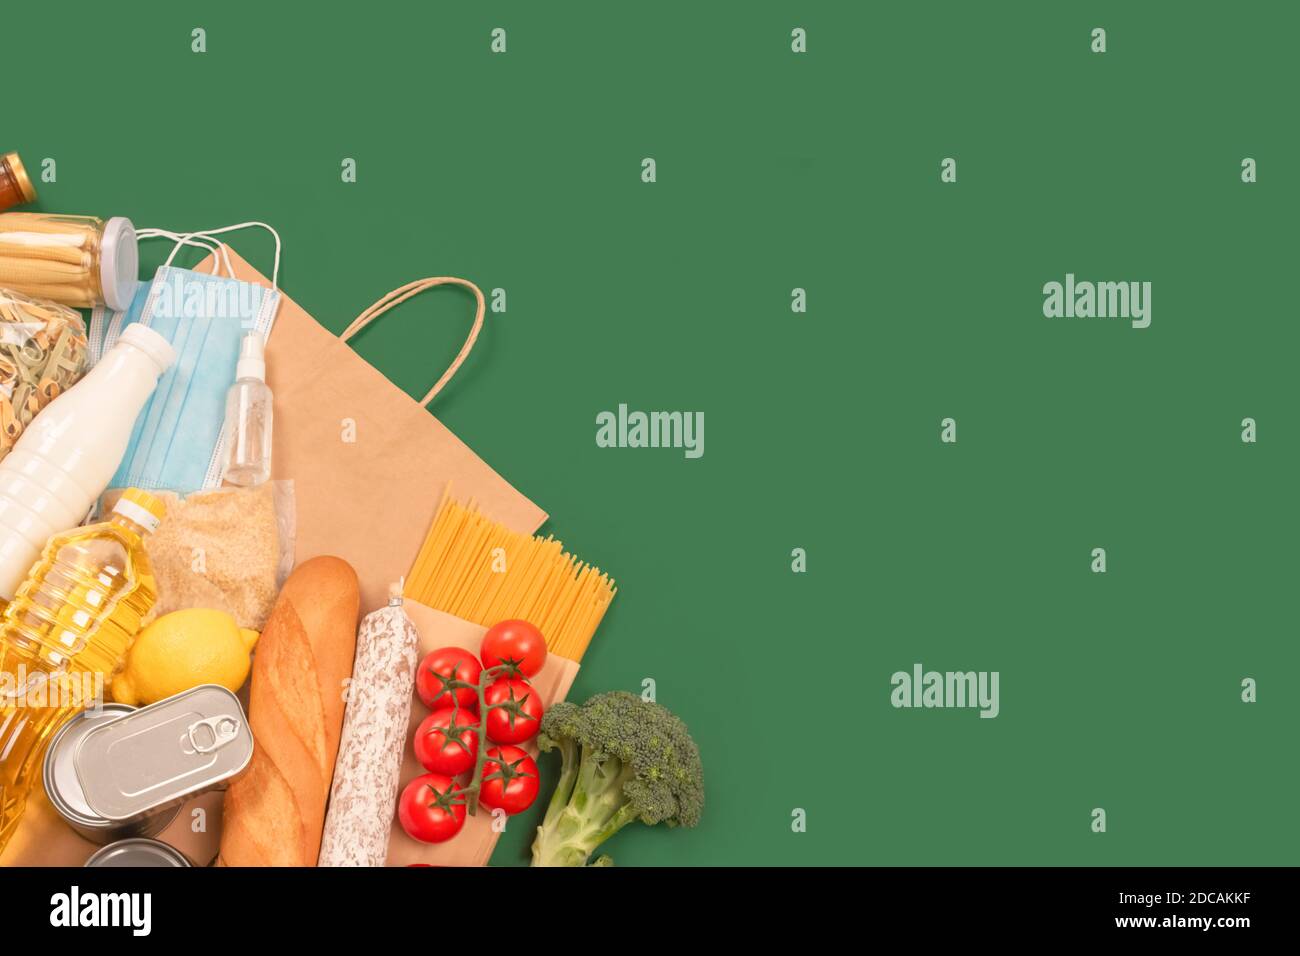 Composizione piatta con donazioni di cibo e medicine su sfondo verde con copyspace - pasta, verdure fresche, cibo in scatola, baguette, cucina Foto Stock